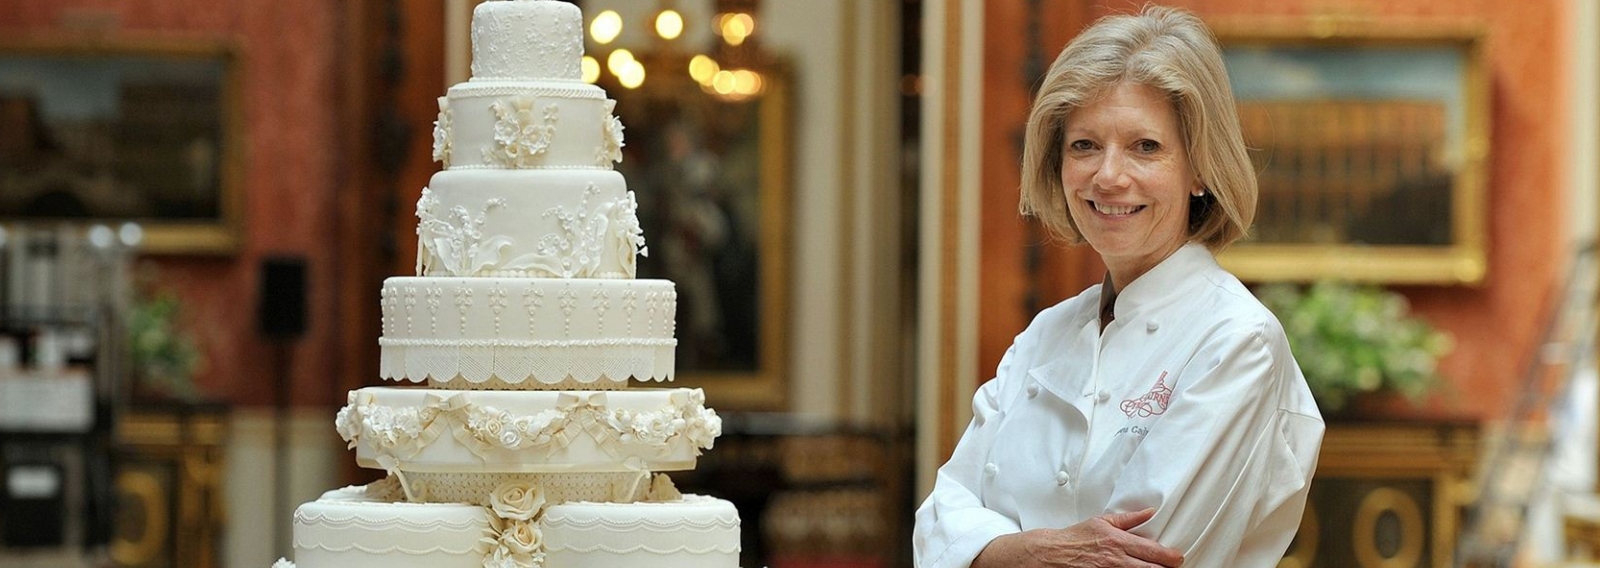 Бесплатный вебинар для свадебных вендоров с кондитером торта для свадьбы Принца Уильяма и  Кейт Миддлтон